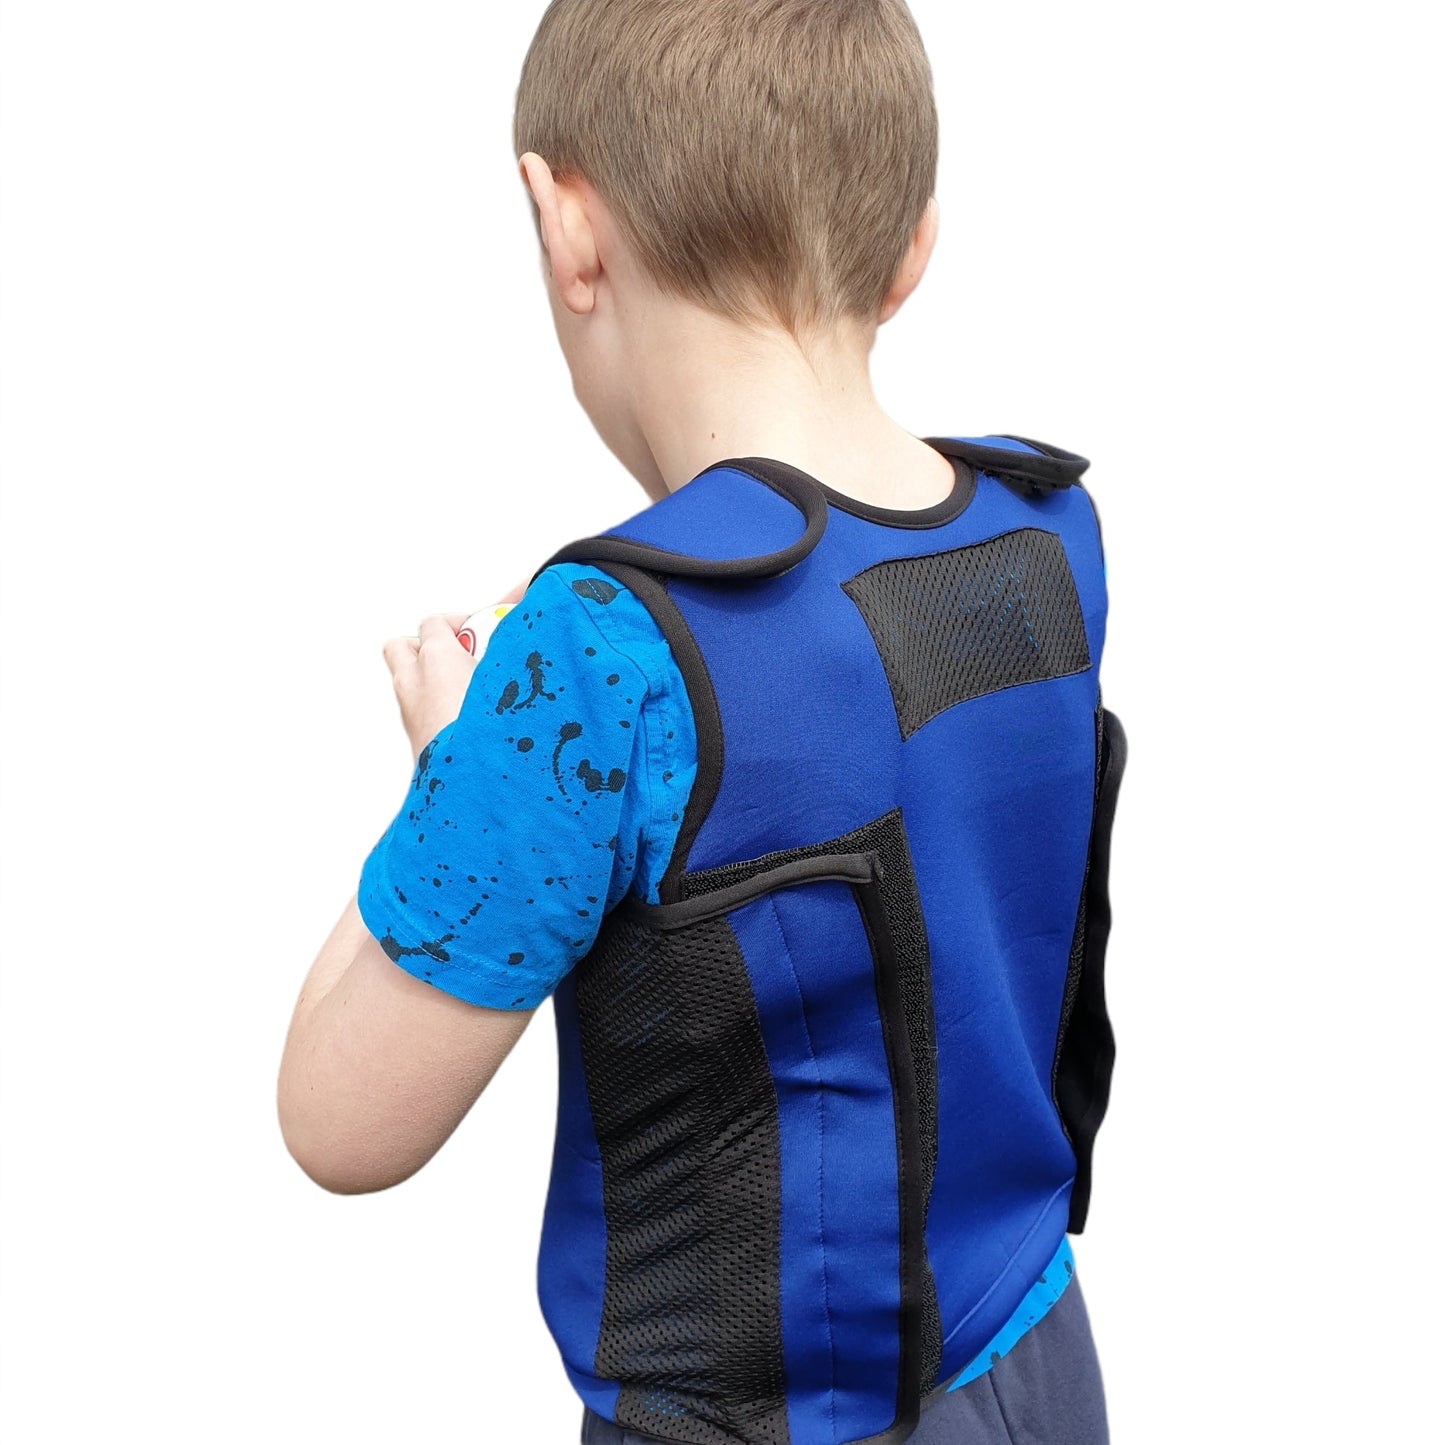 RETURNS Weighted Adjustable Compression Vest-Deep Pressure for Children age 2-10+